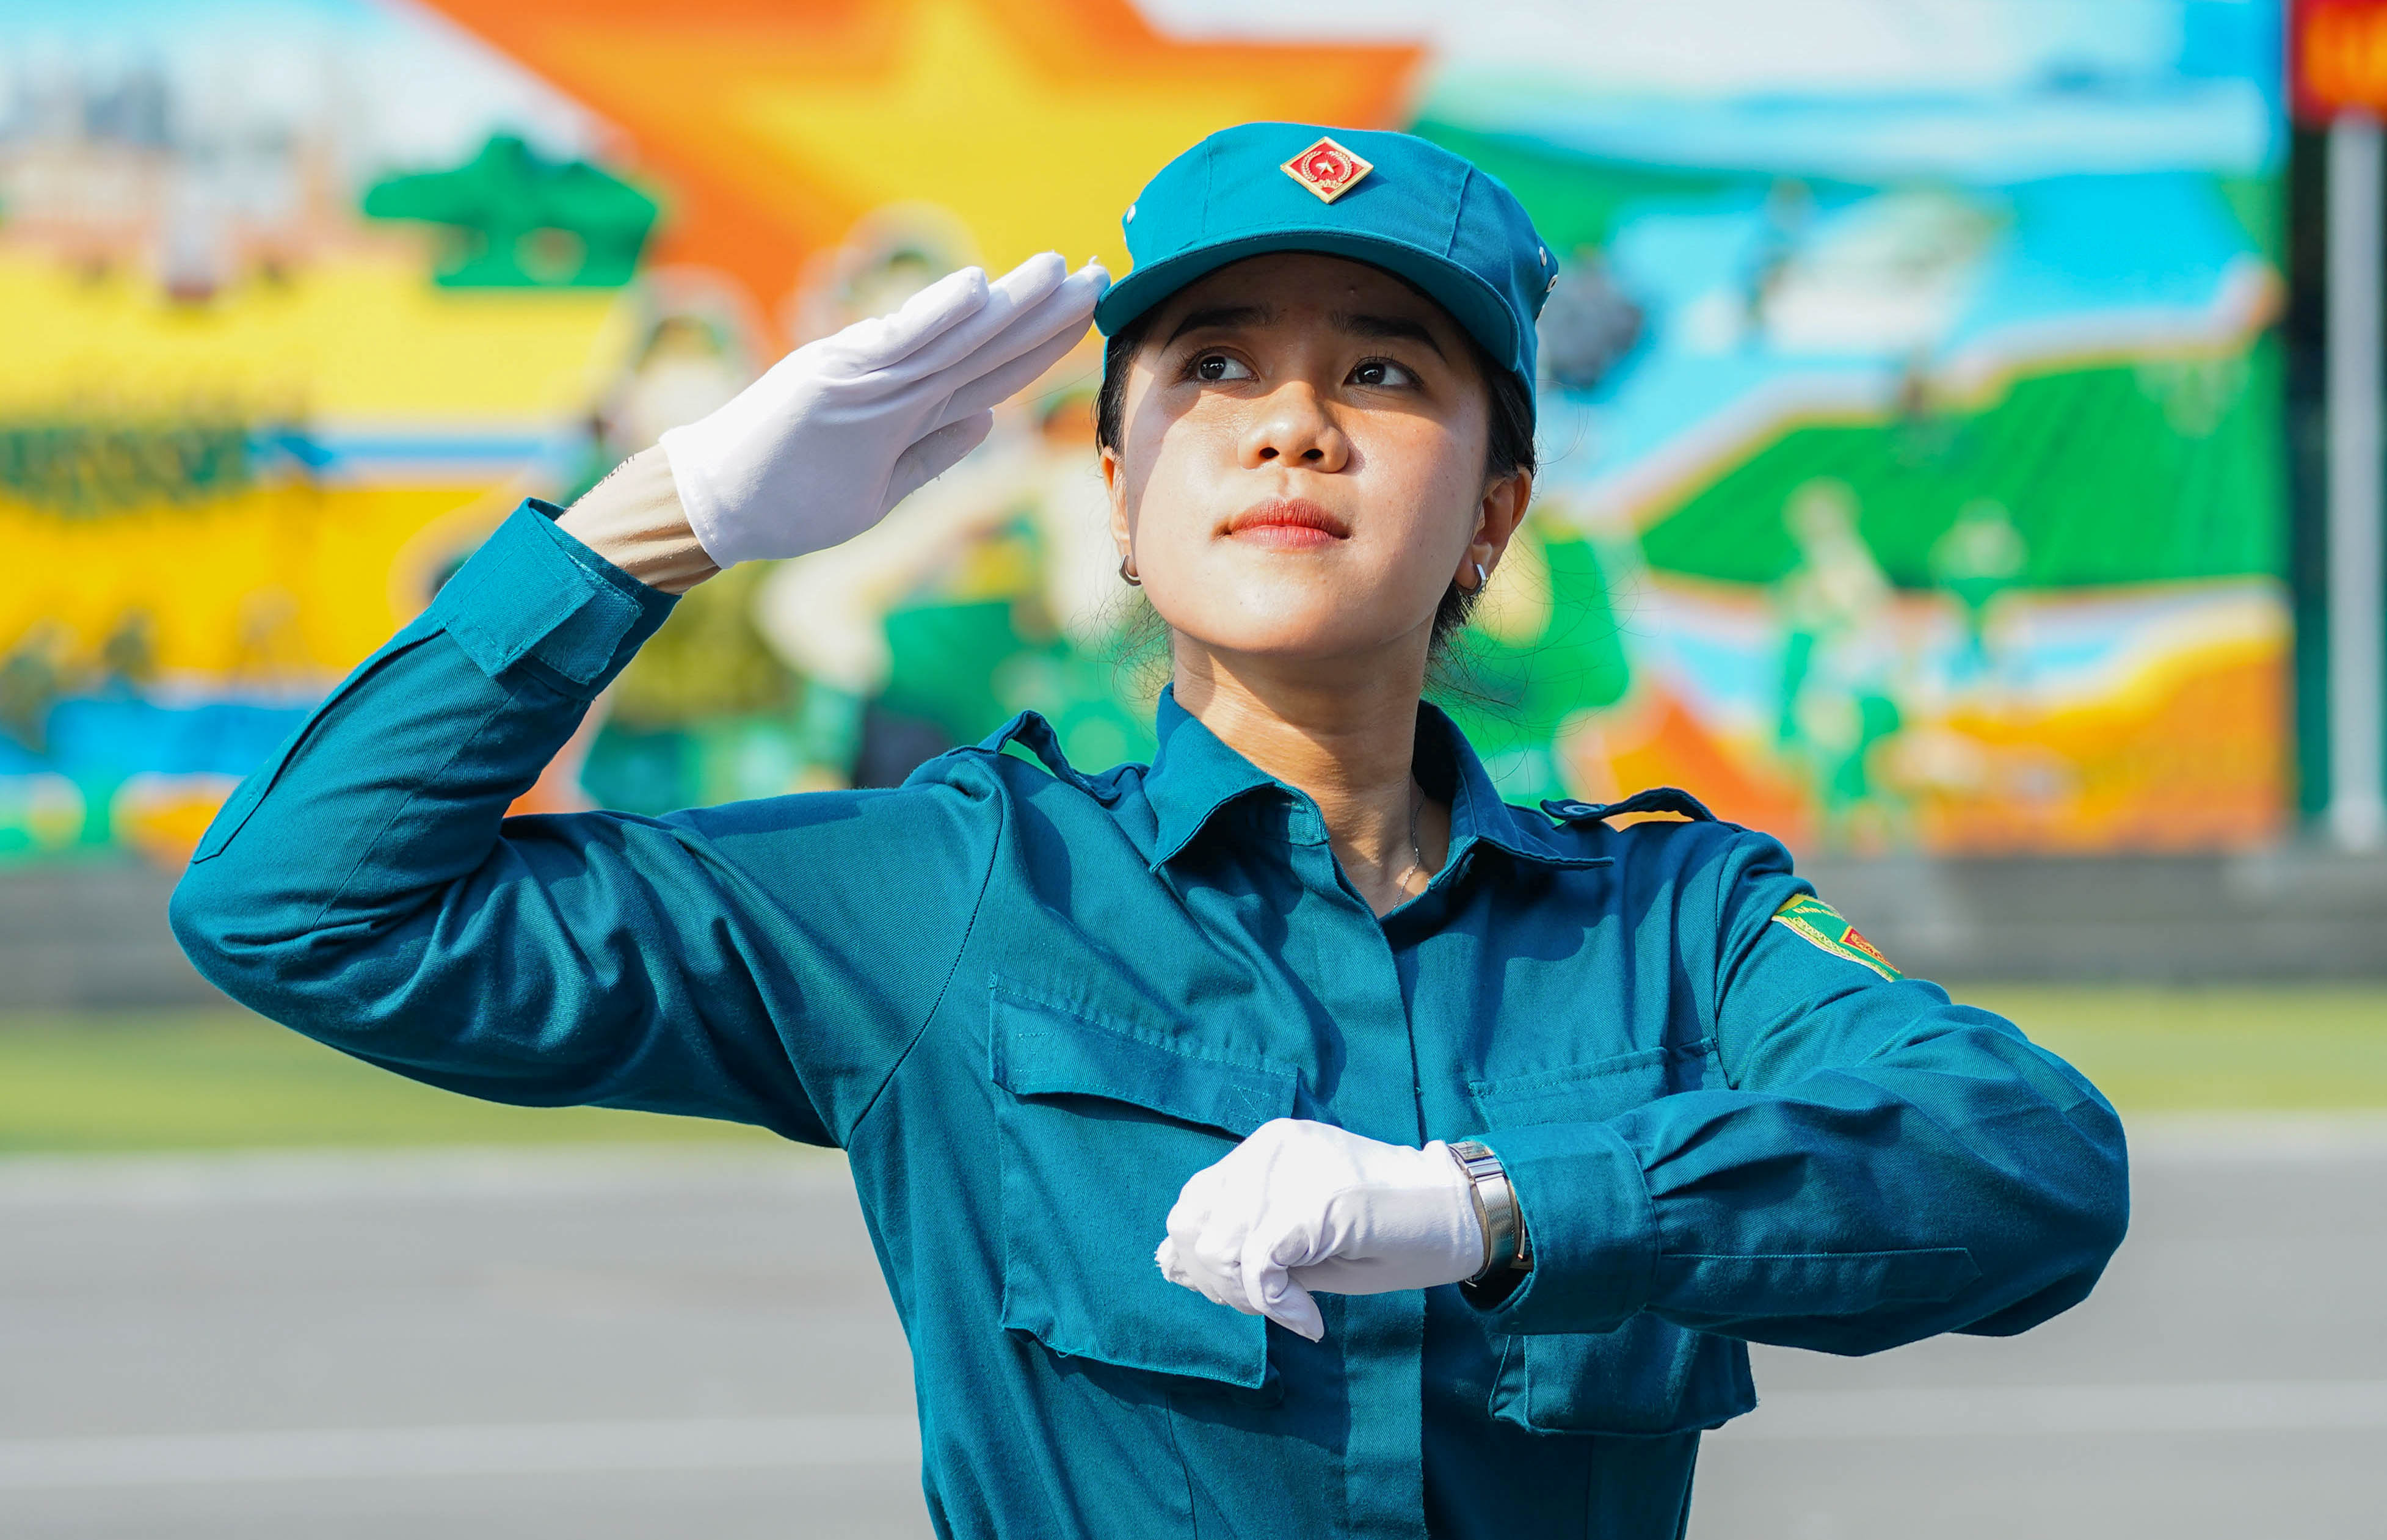 TP.HCM tuyển chọn hơn 100 nữ dân quân để huấn luyện cho dịp kỷ niệm quan trọng của đất nước